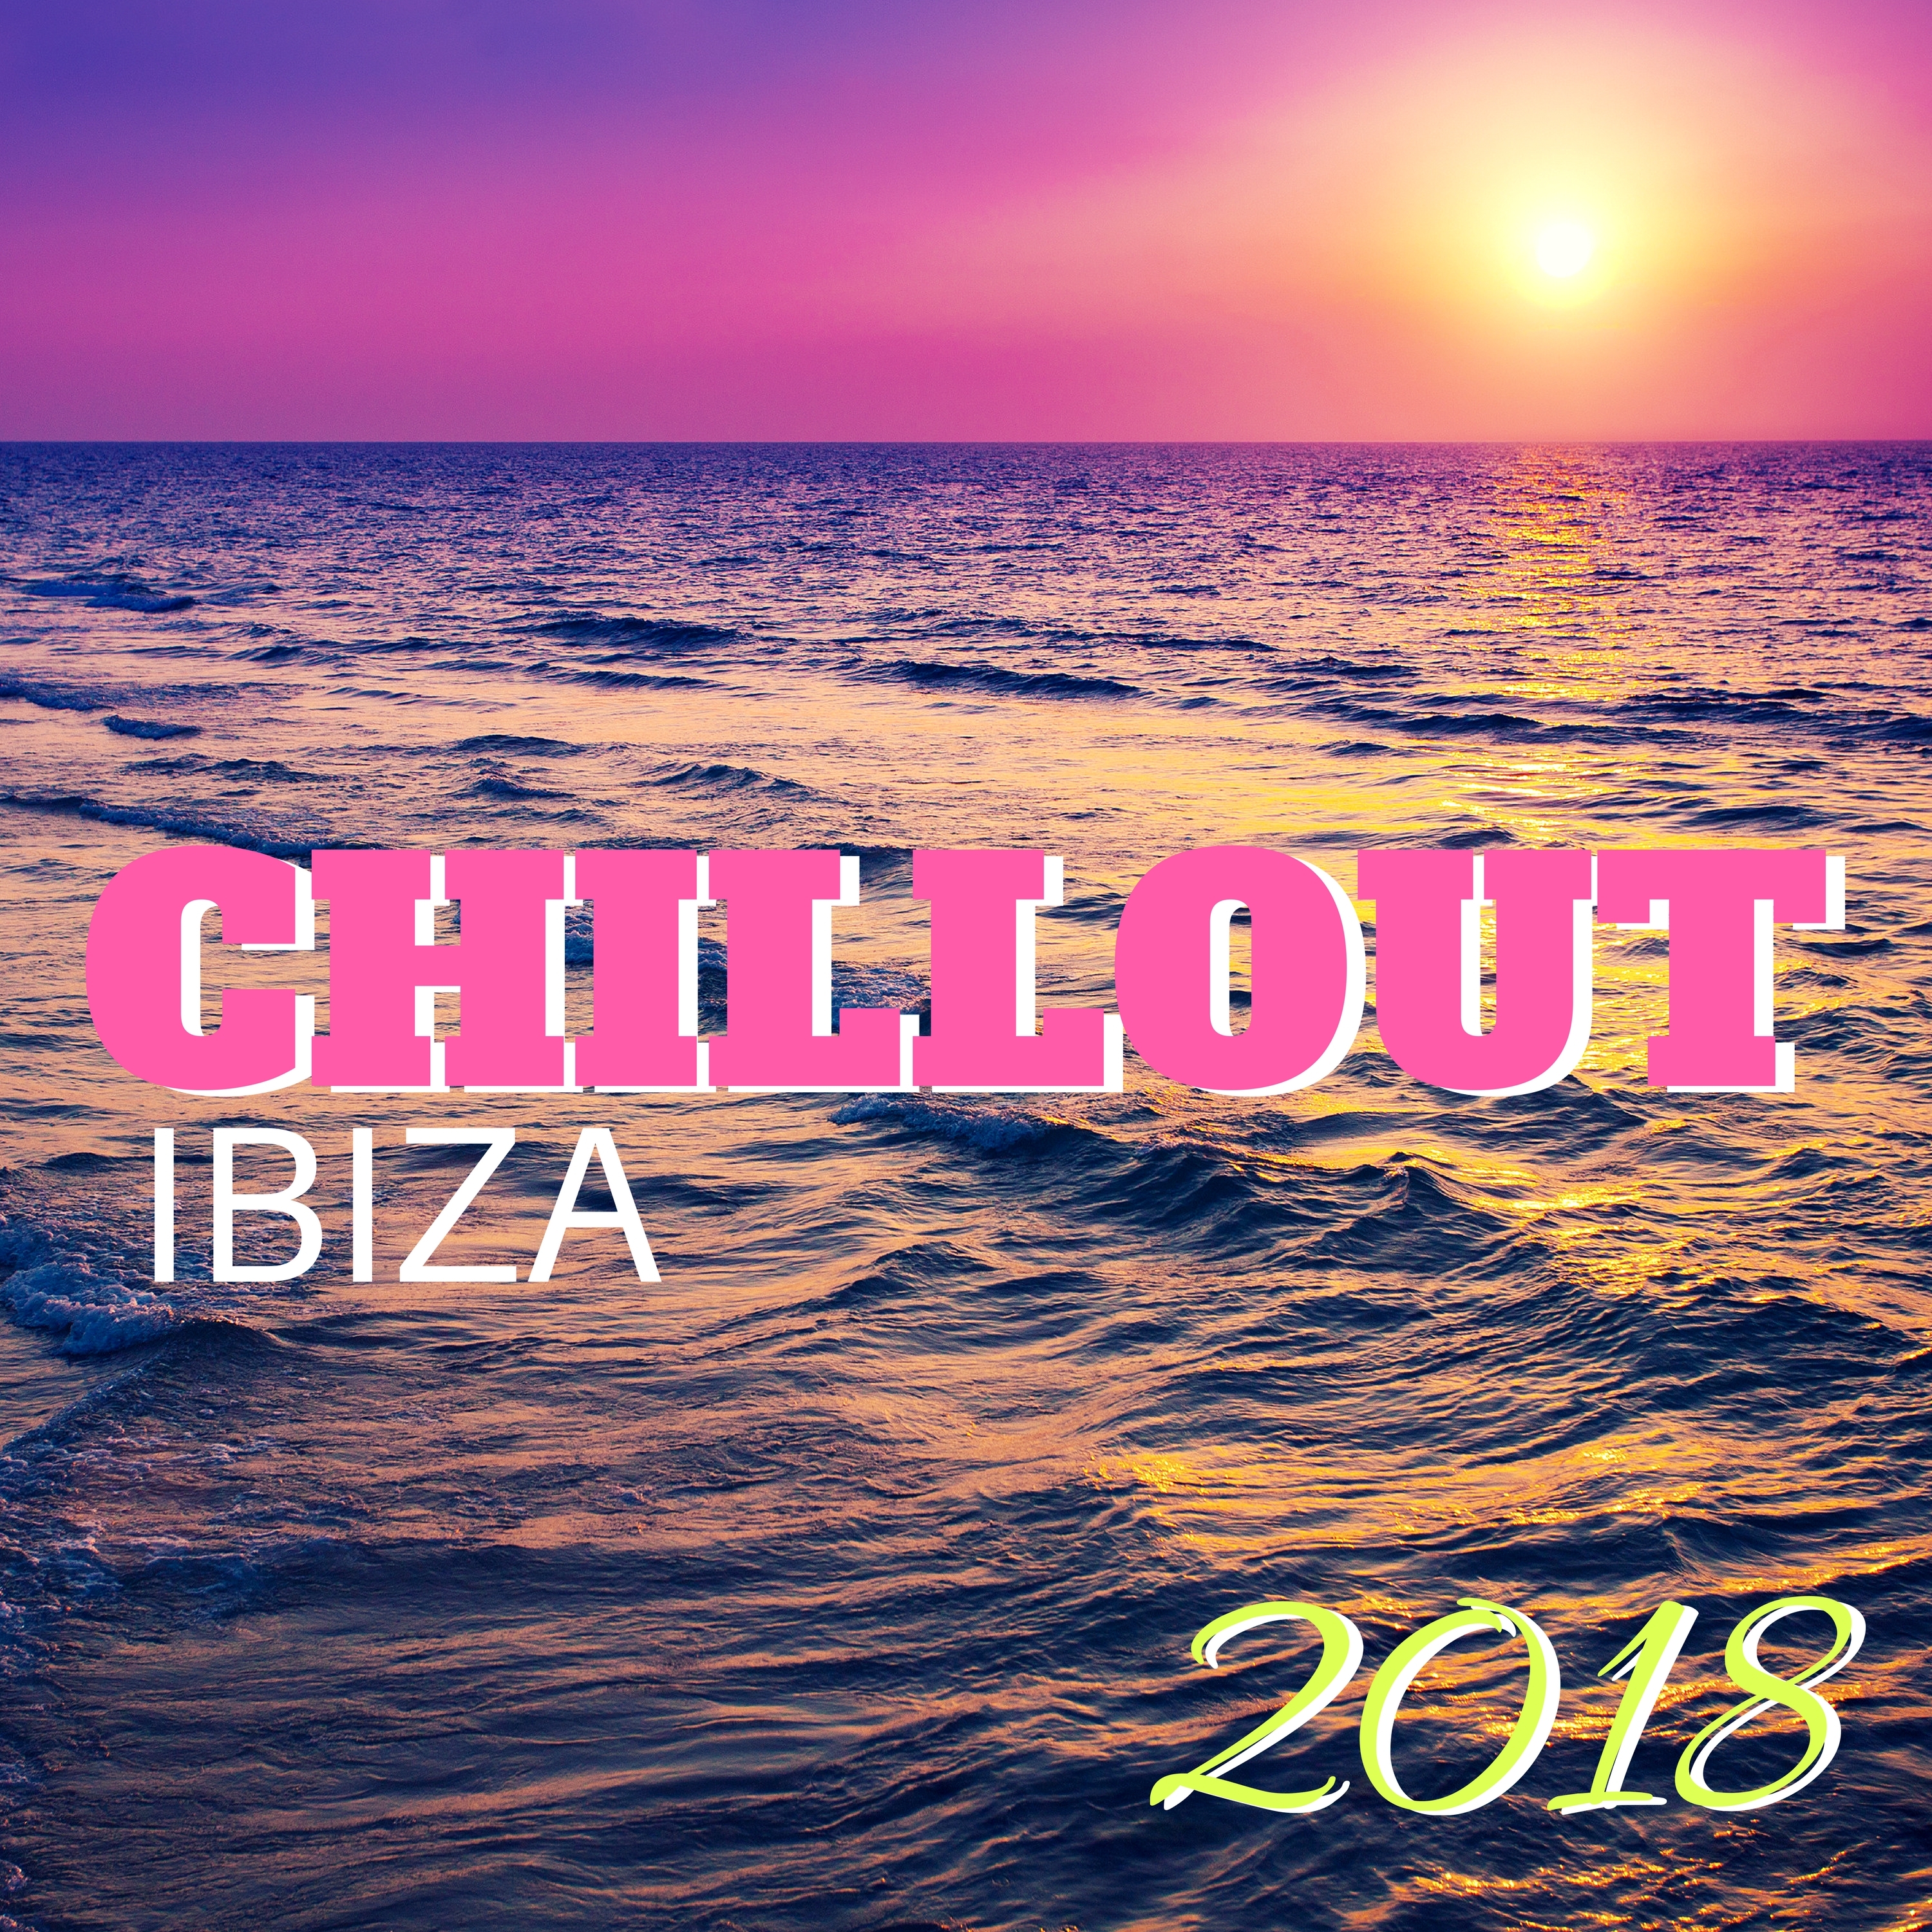 Hotel Chillout Ibiza